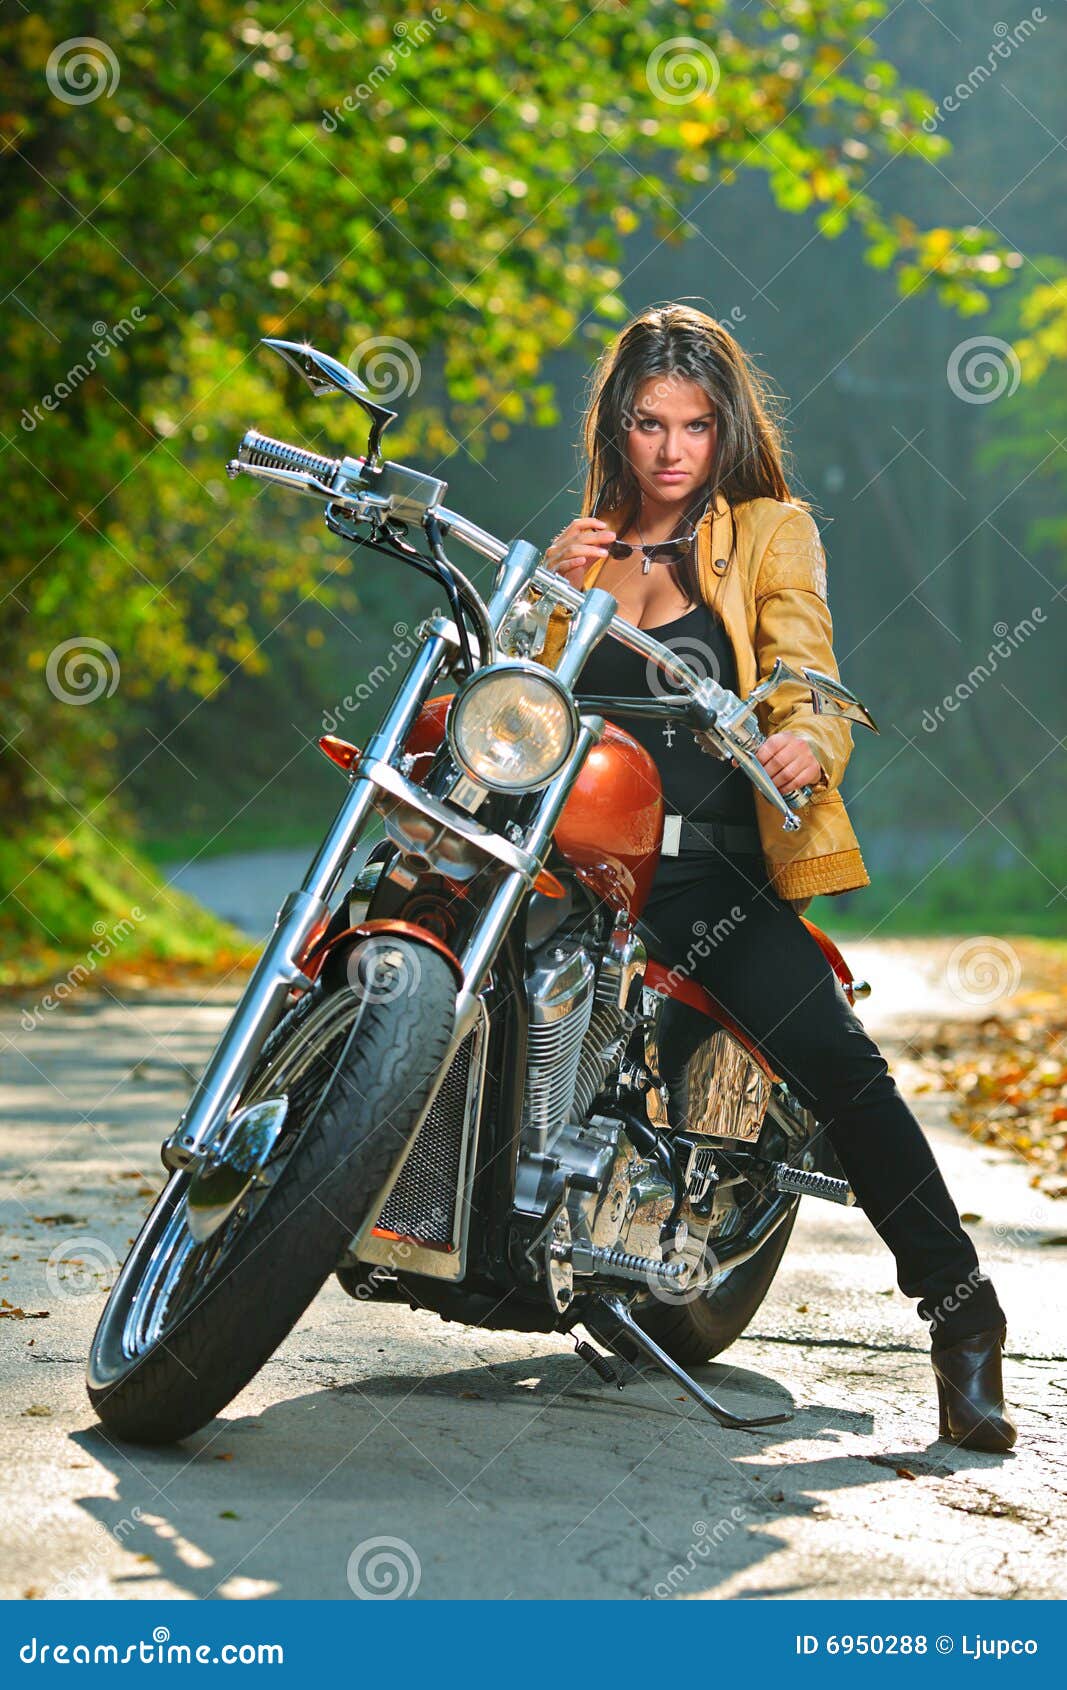 Biker girl on a motorcycle stock photo. Image of jacket - 6950288